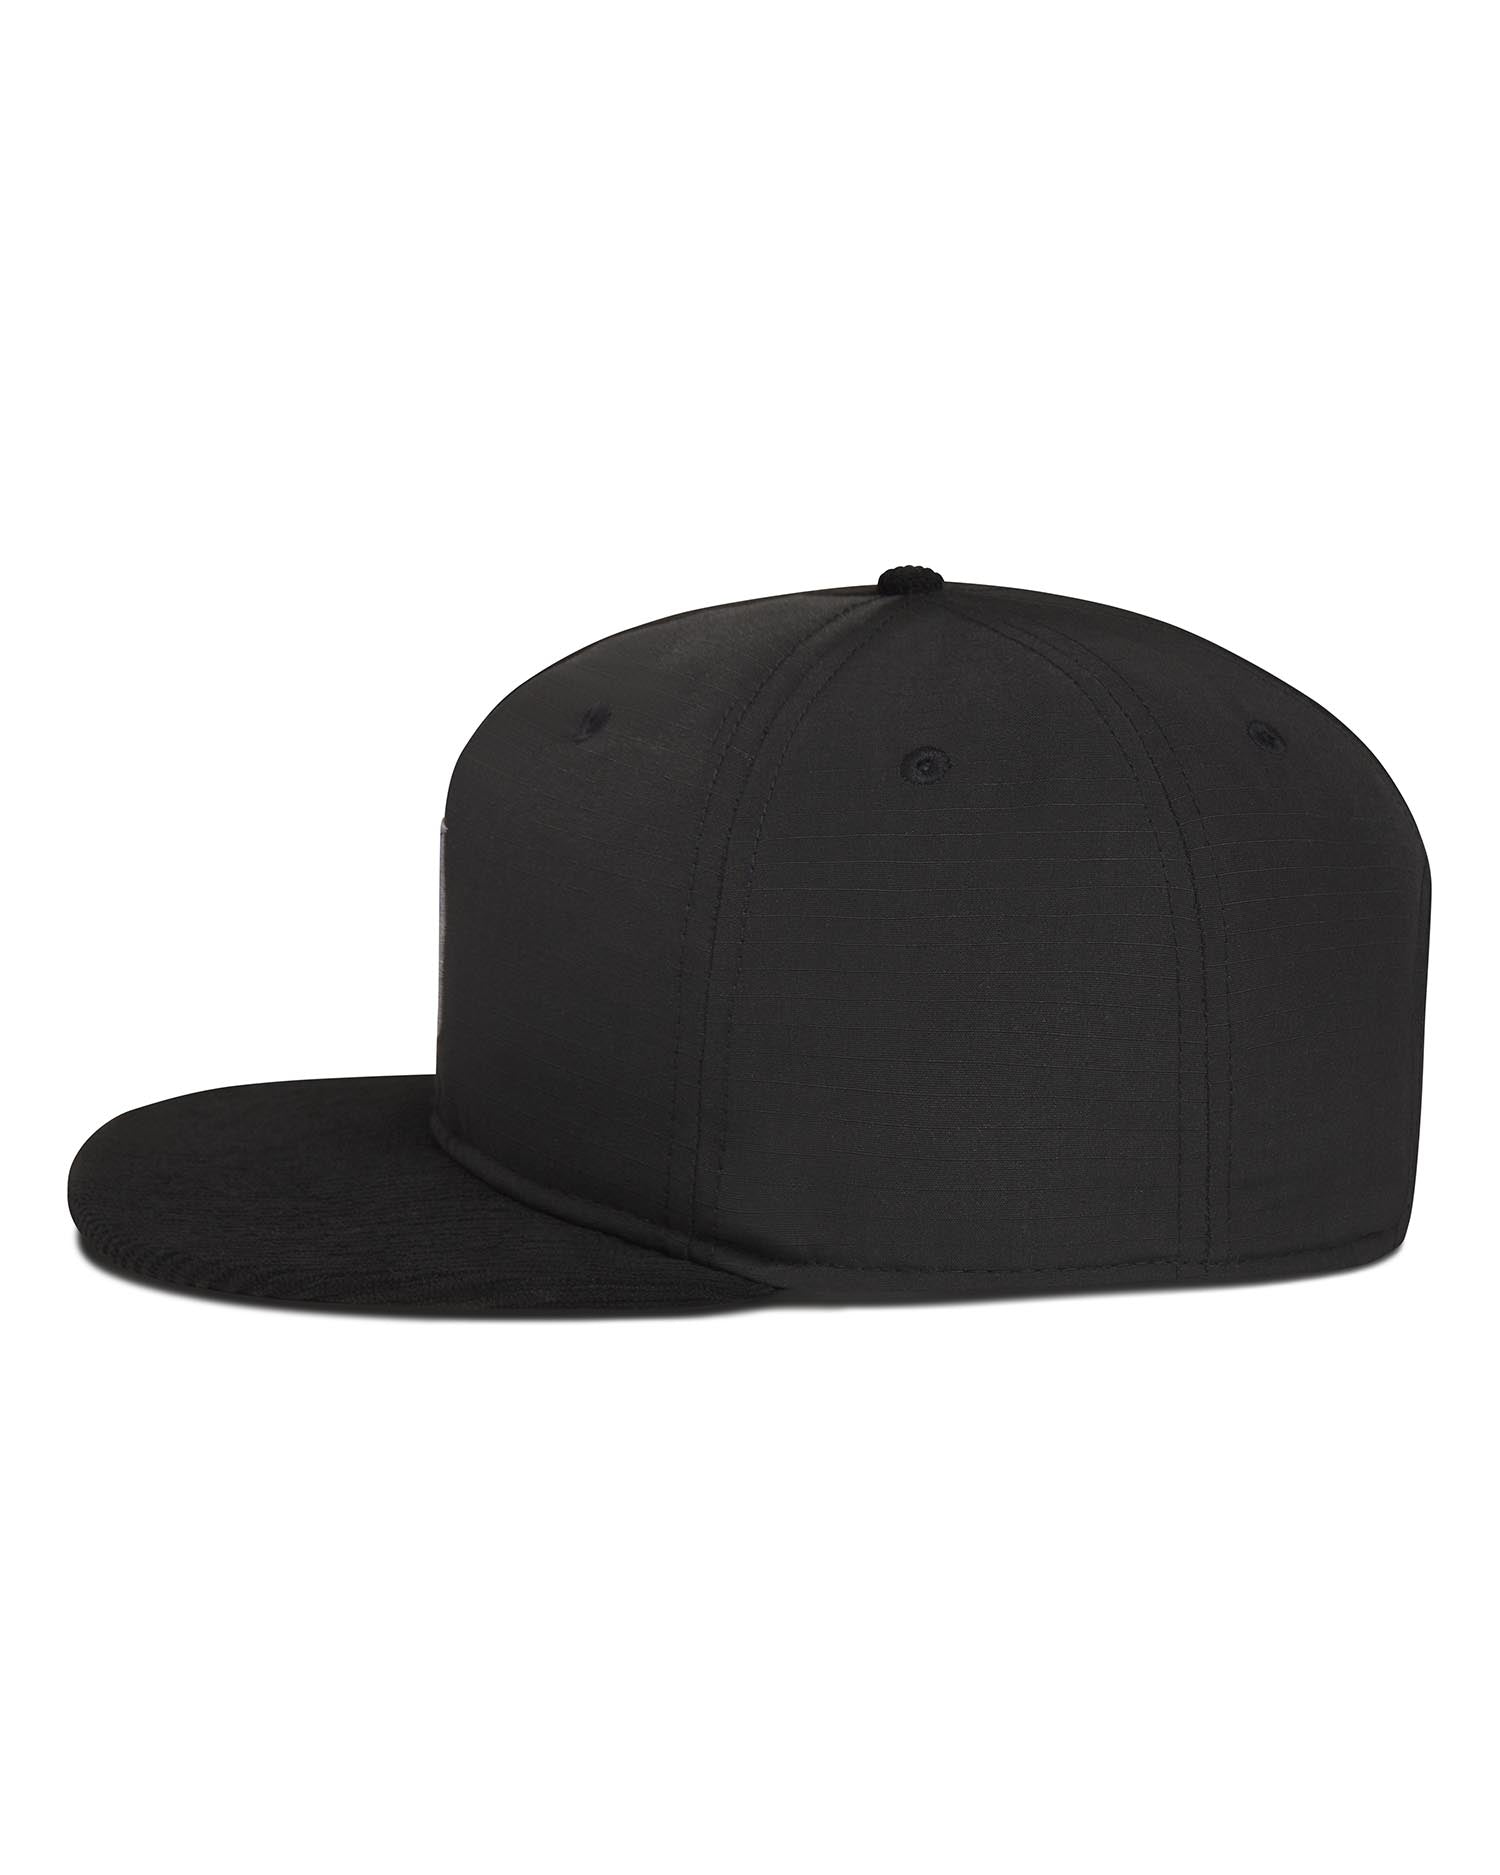 MM4756 Black Hat - Sportiqe Apparel 